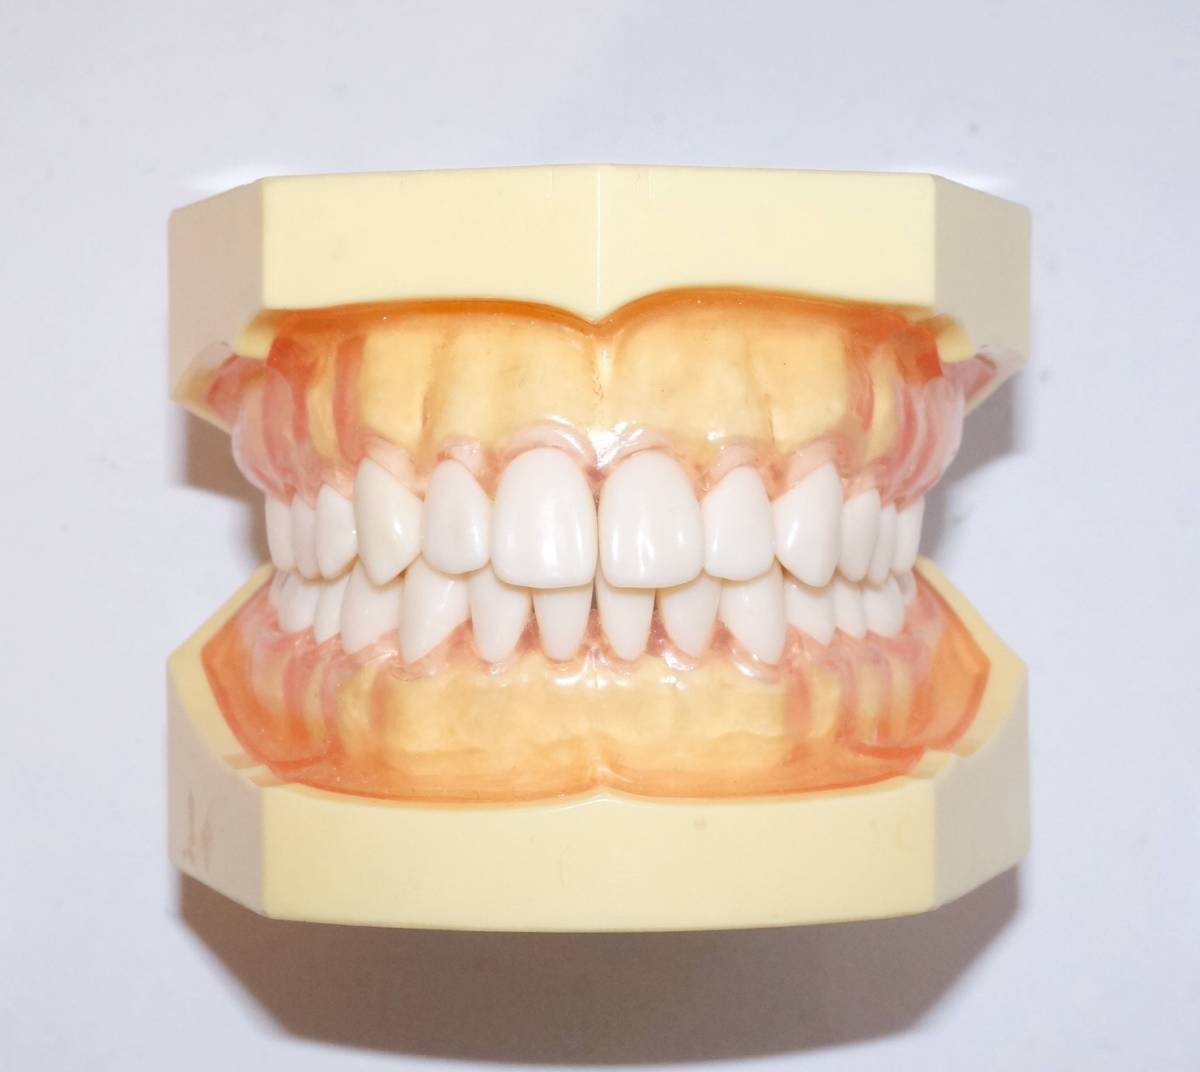 NISSIN 歯周病 歯科 模型 歯周外科 顎模型 歯科衛生士 ニッシン スケーリング スケーラー SRP 歯肉 歯石 マネキン 超音波 ペリオ 舌 _画像3